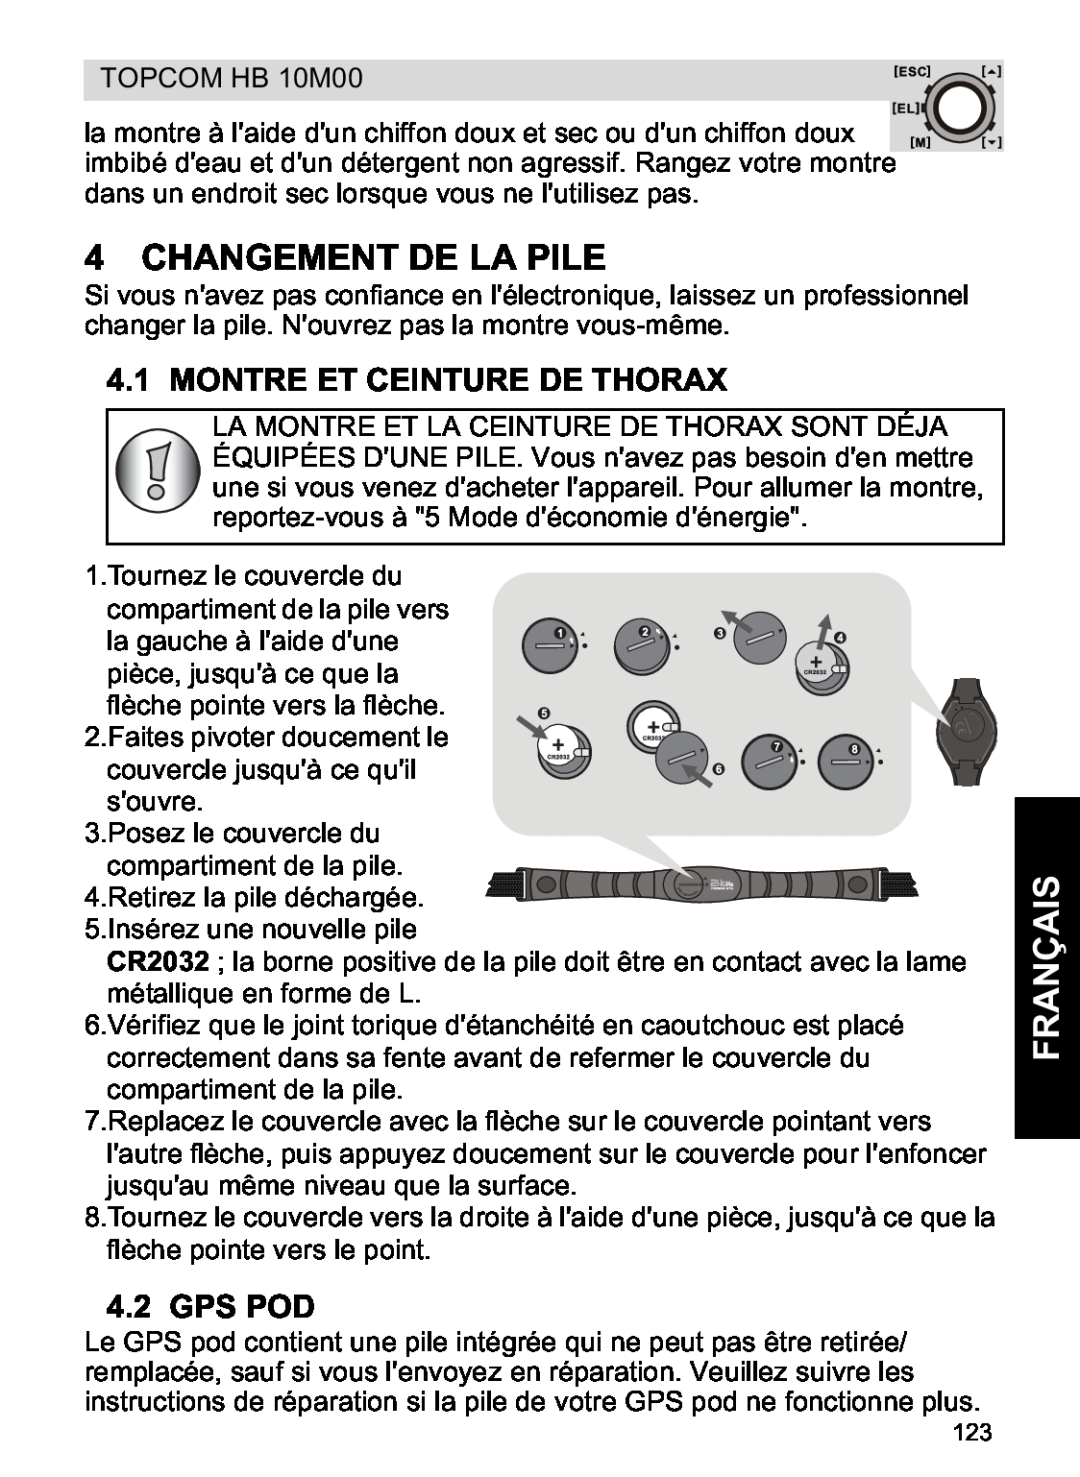 Topcom HB 10M00 manual Changement De La Pile, Français, Montre Et Ceinture De Thorax, Gps Pod 